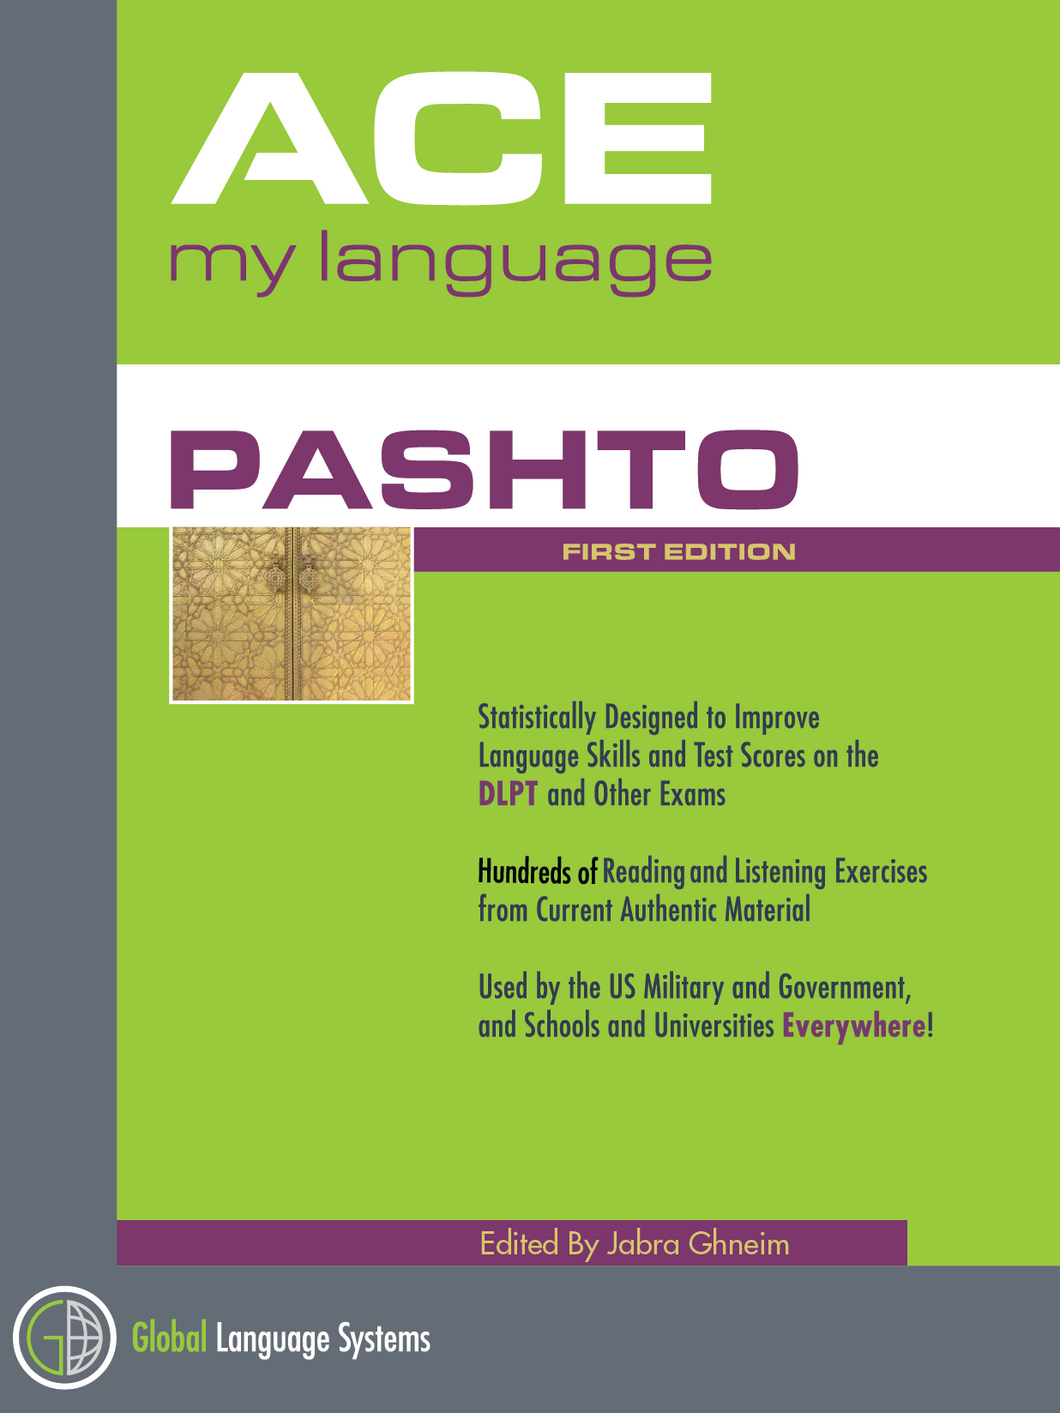 Ace My Language - PASHTO